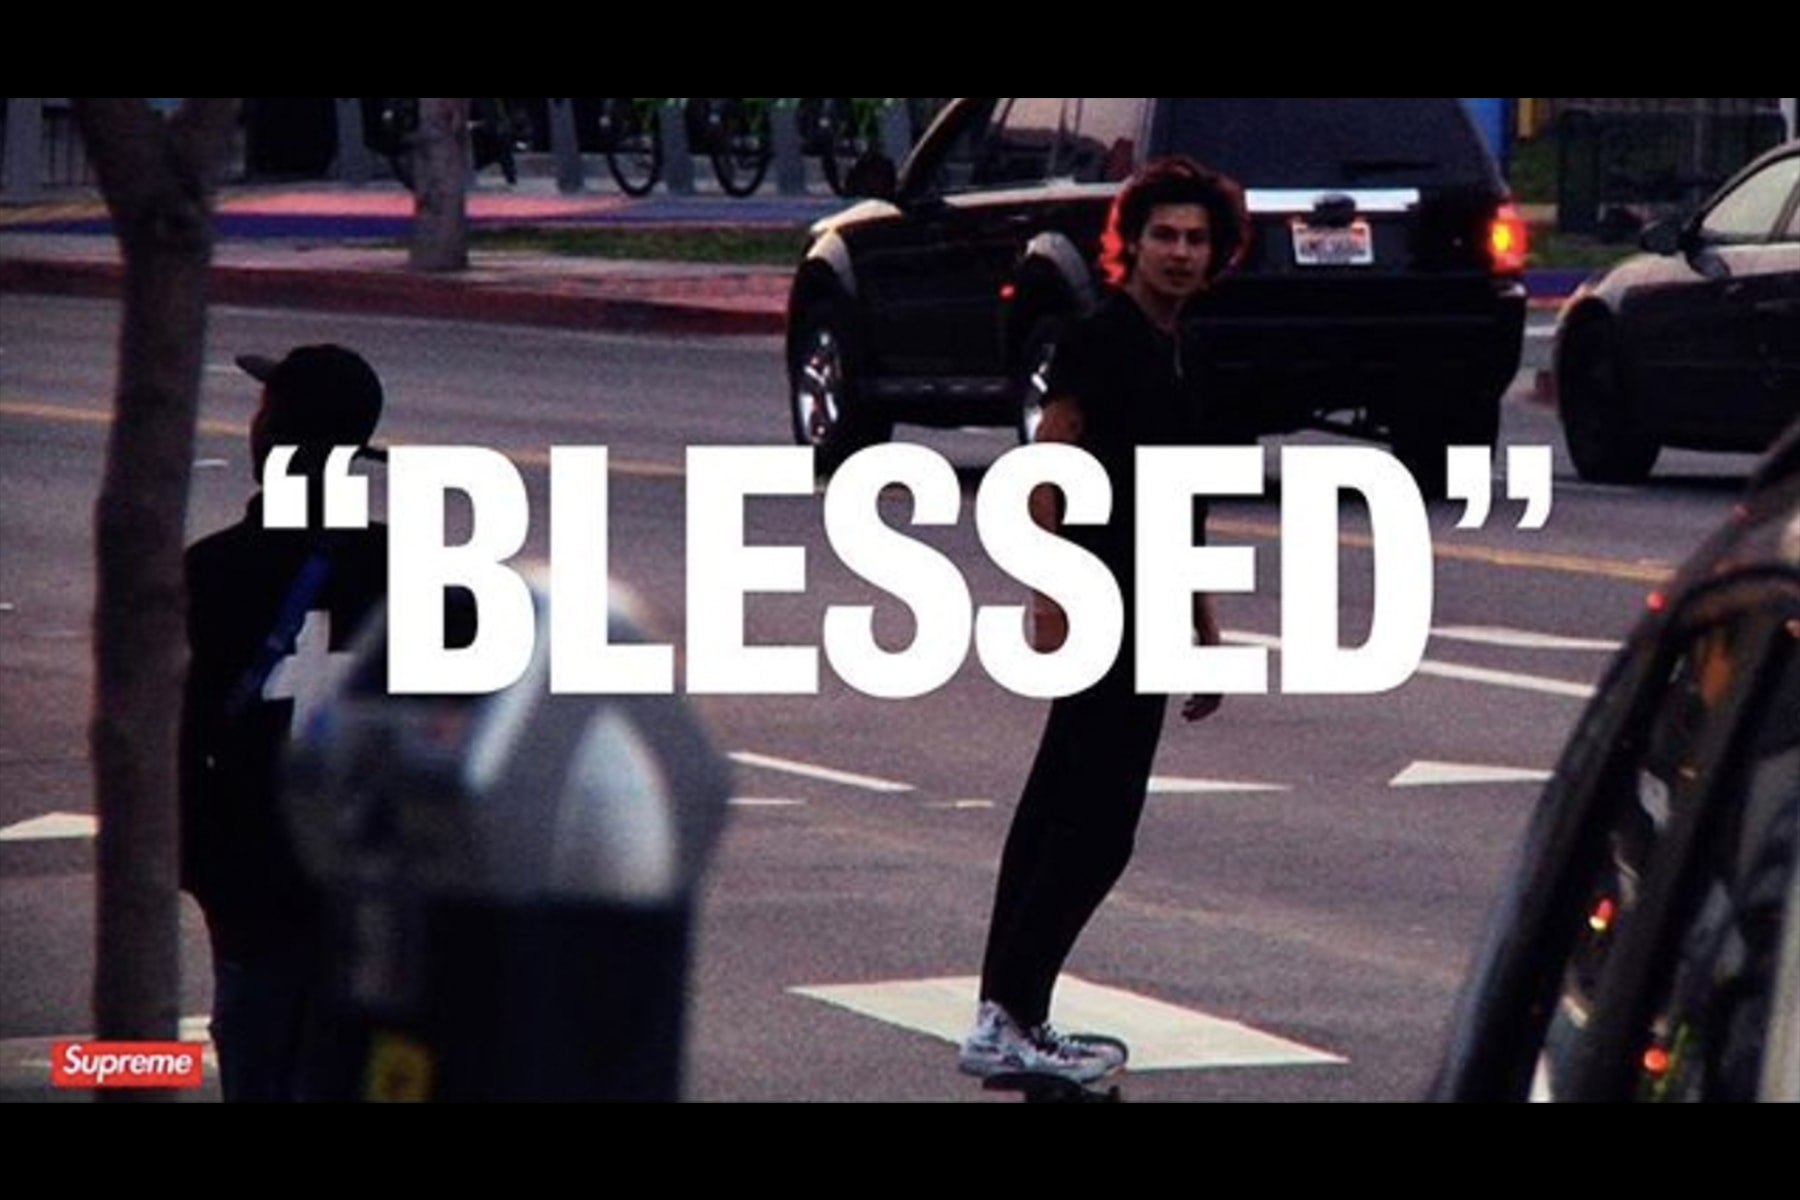 Supreme による 新 作 フルレングス スケートビデオ『“BLESSED”』がもう間もなく公開へ シュプリーム スケート ビデオ ムービー HYPEBEAST ハイプビースト